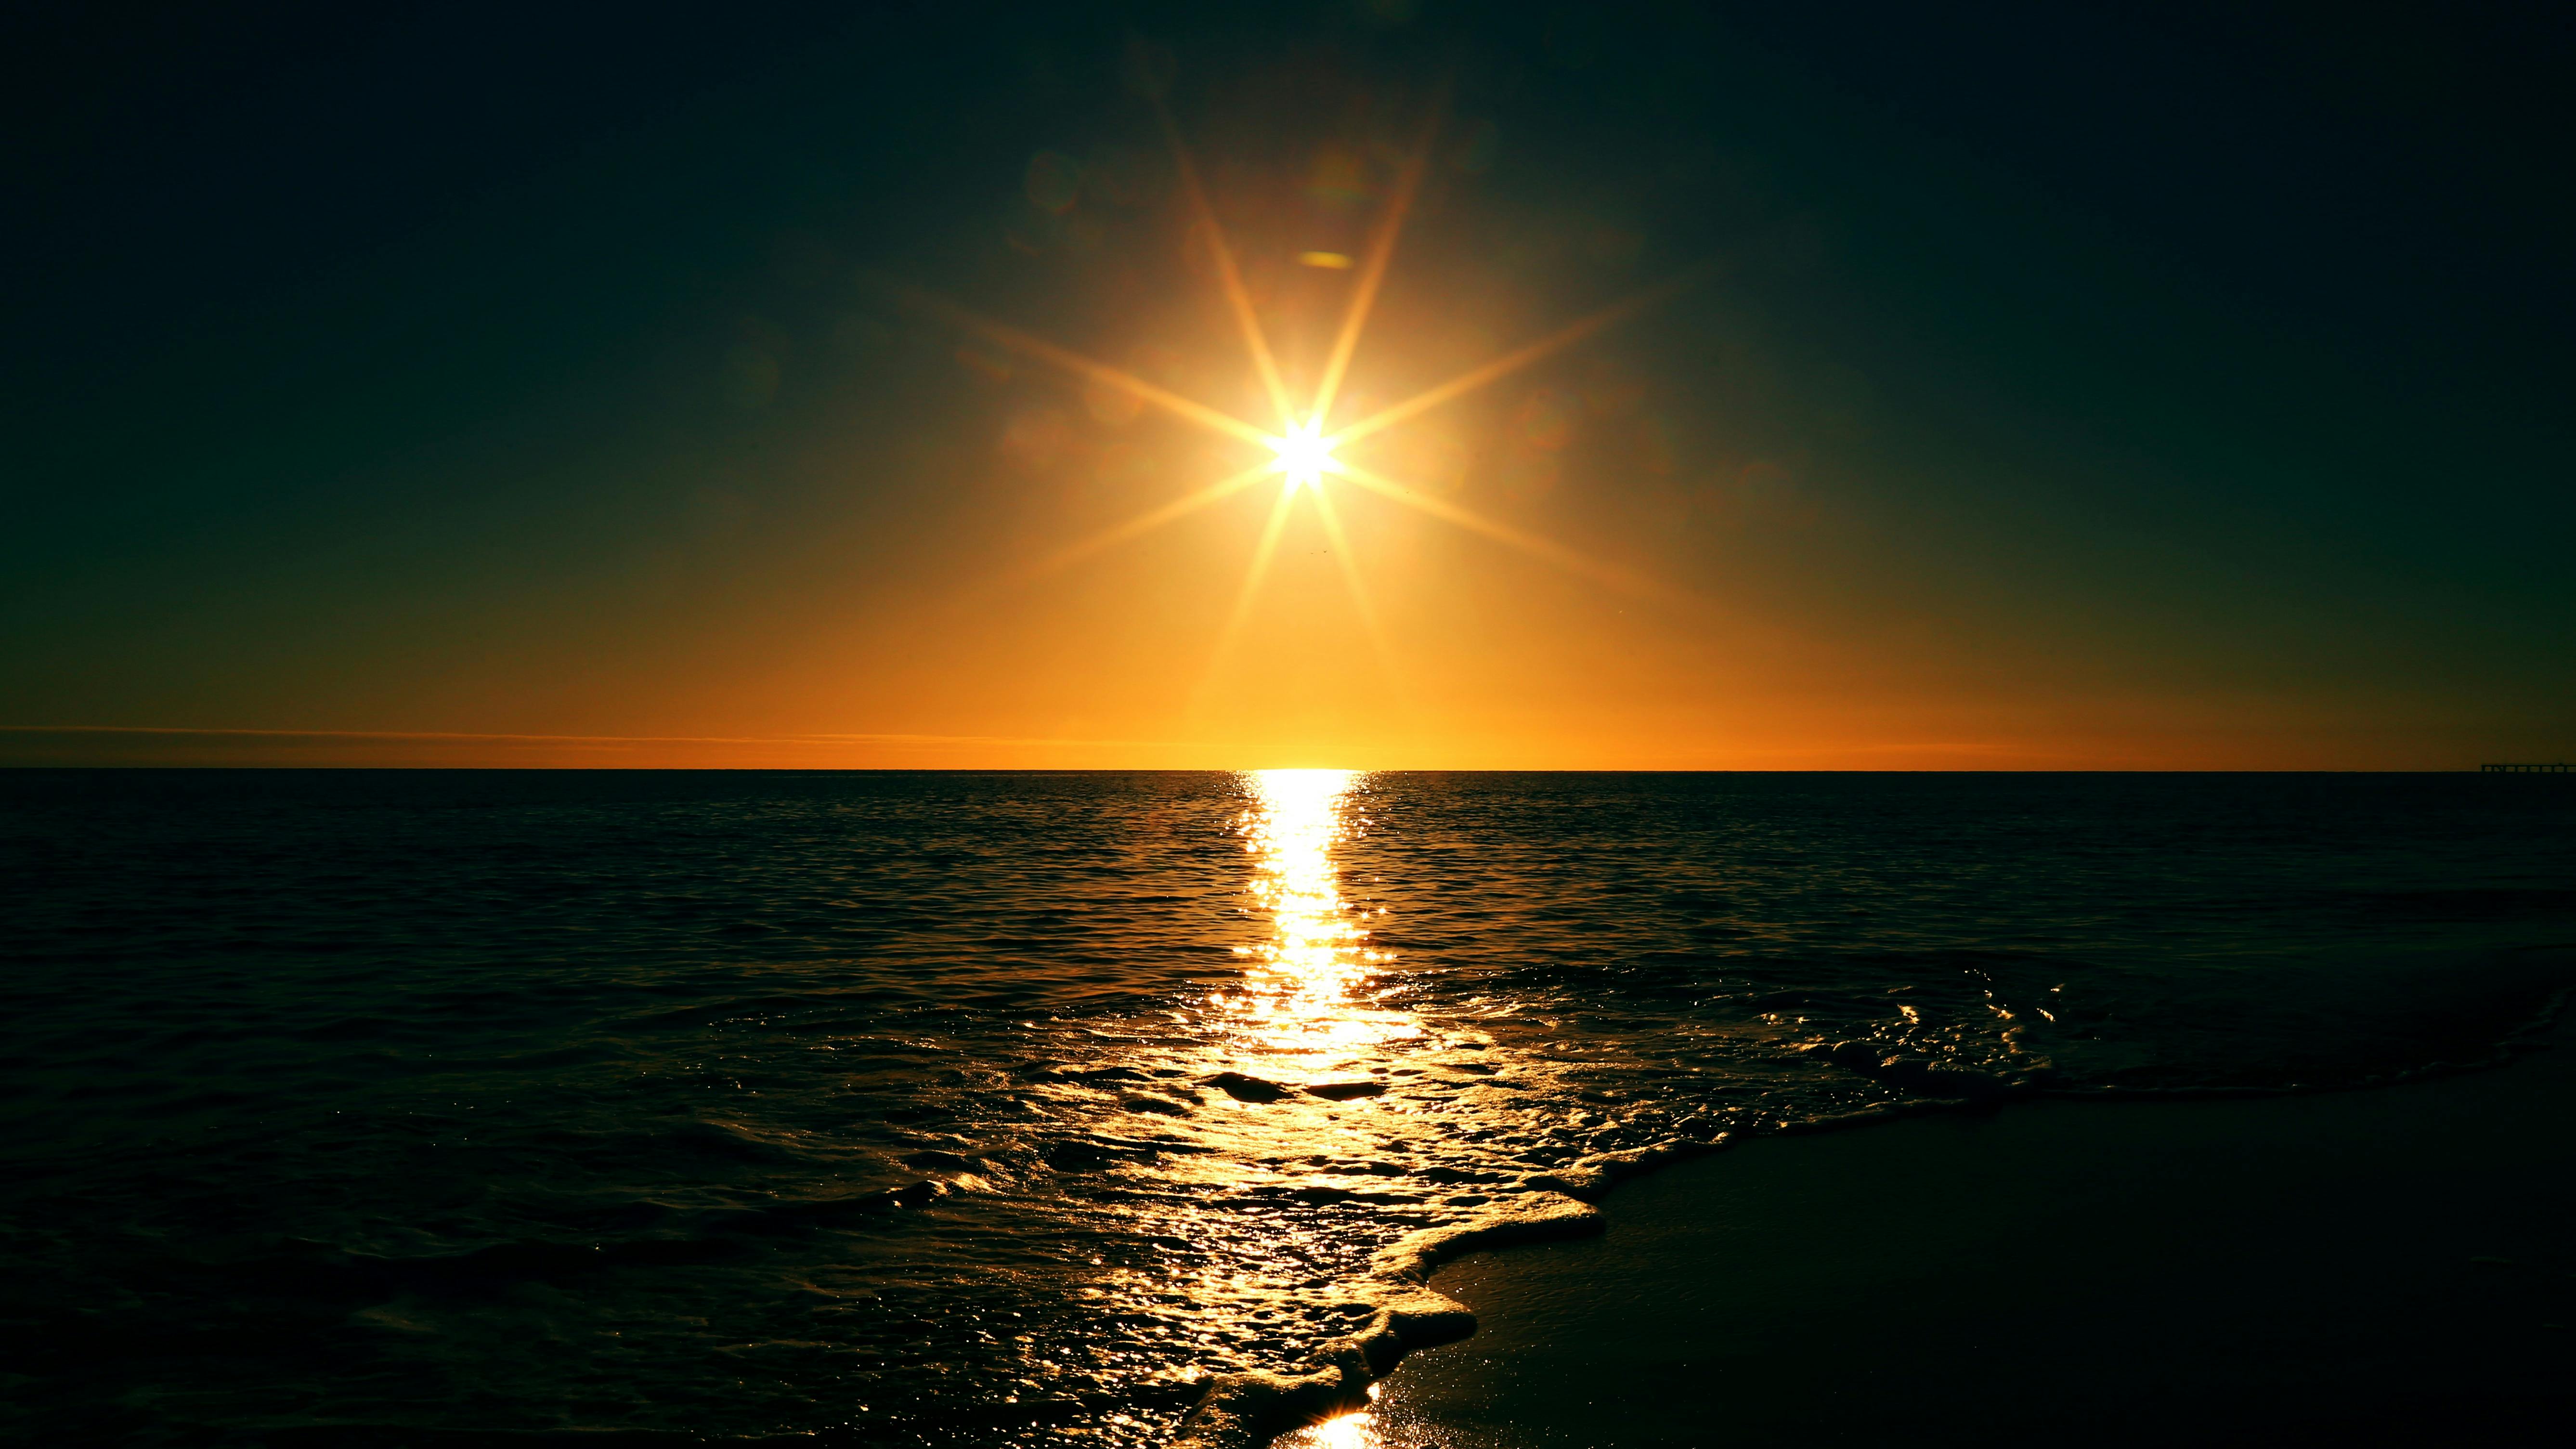 https://static.pexels.com/photos/11434/Life-of-Pix-free-stock-photos-sunset-sea-light-mikewilson.jpeg